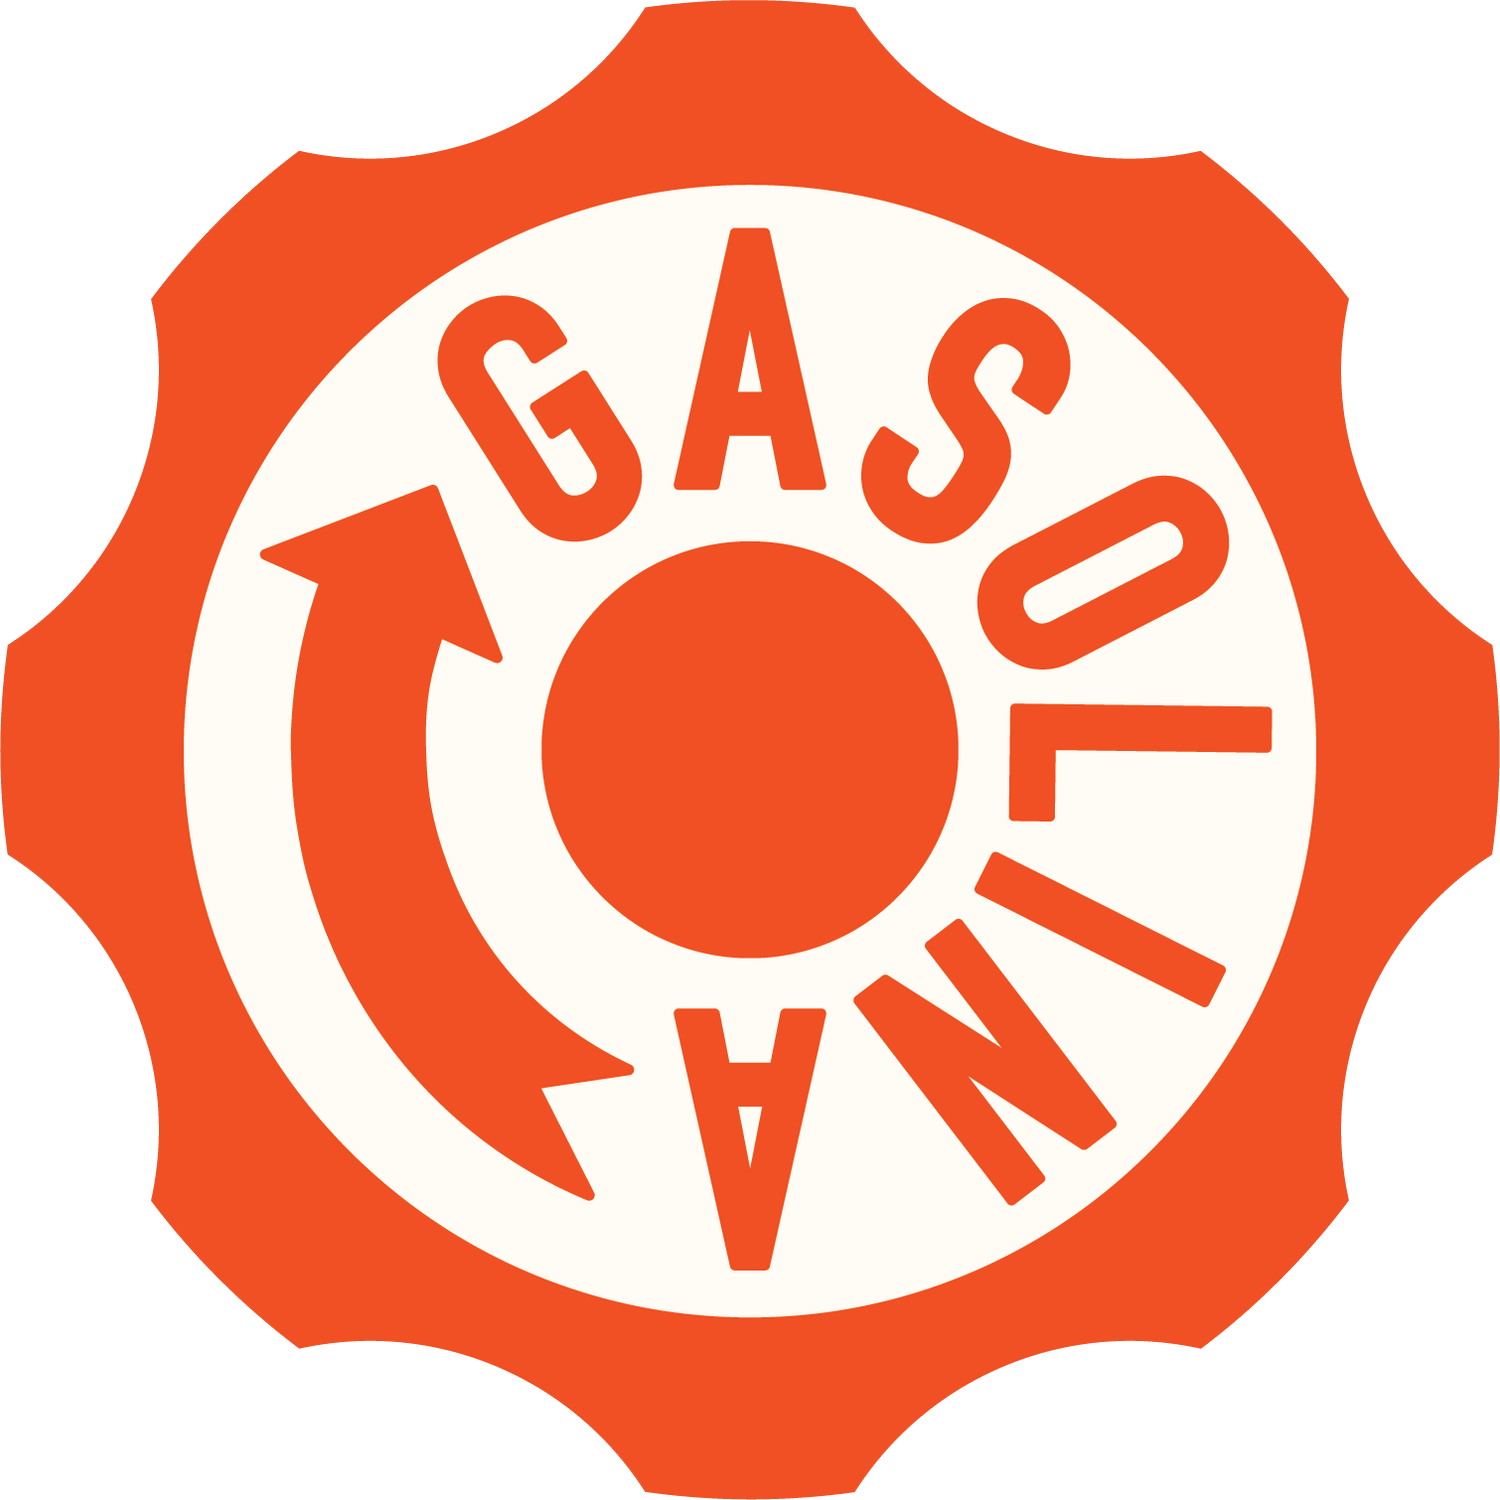 Gasolina Cafe